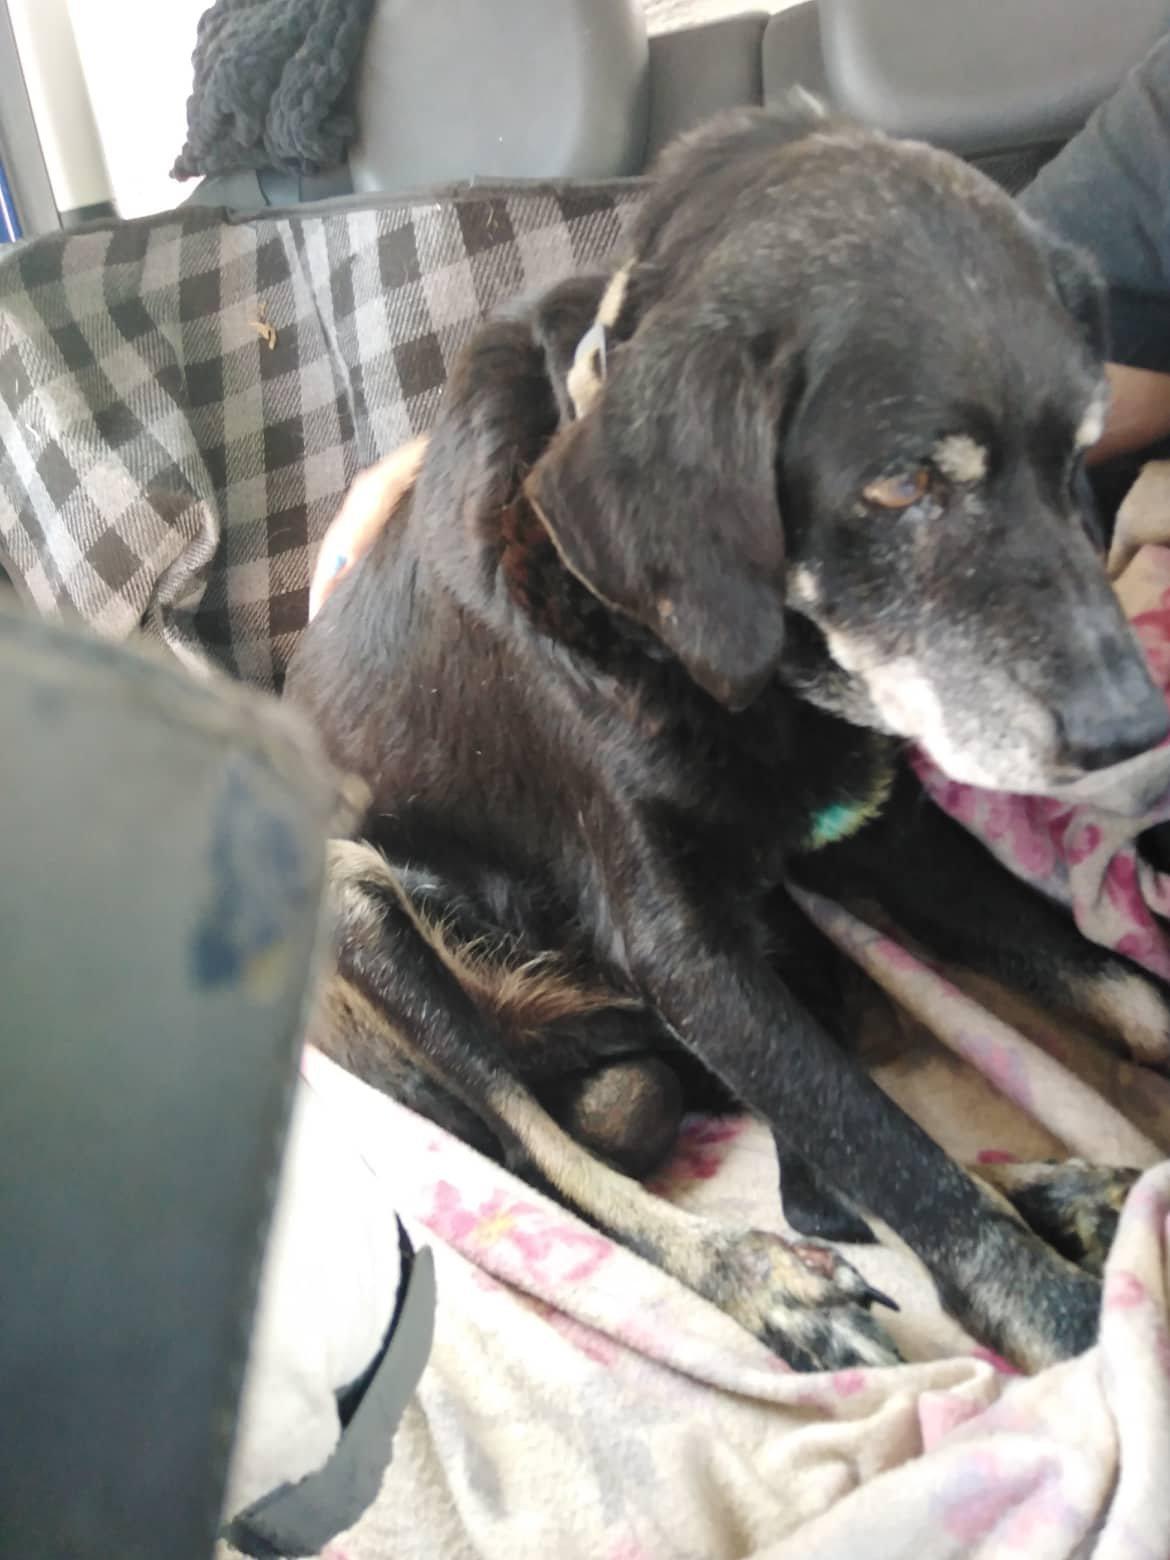 Φρίκη : Έσερνε με το αυτοκίνητο τον γέρικο σκύλο του δεμένο στον προφυλακτήρα